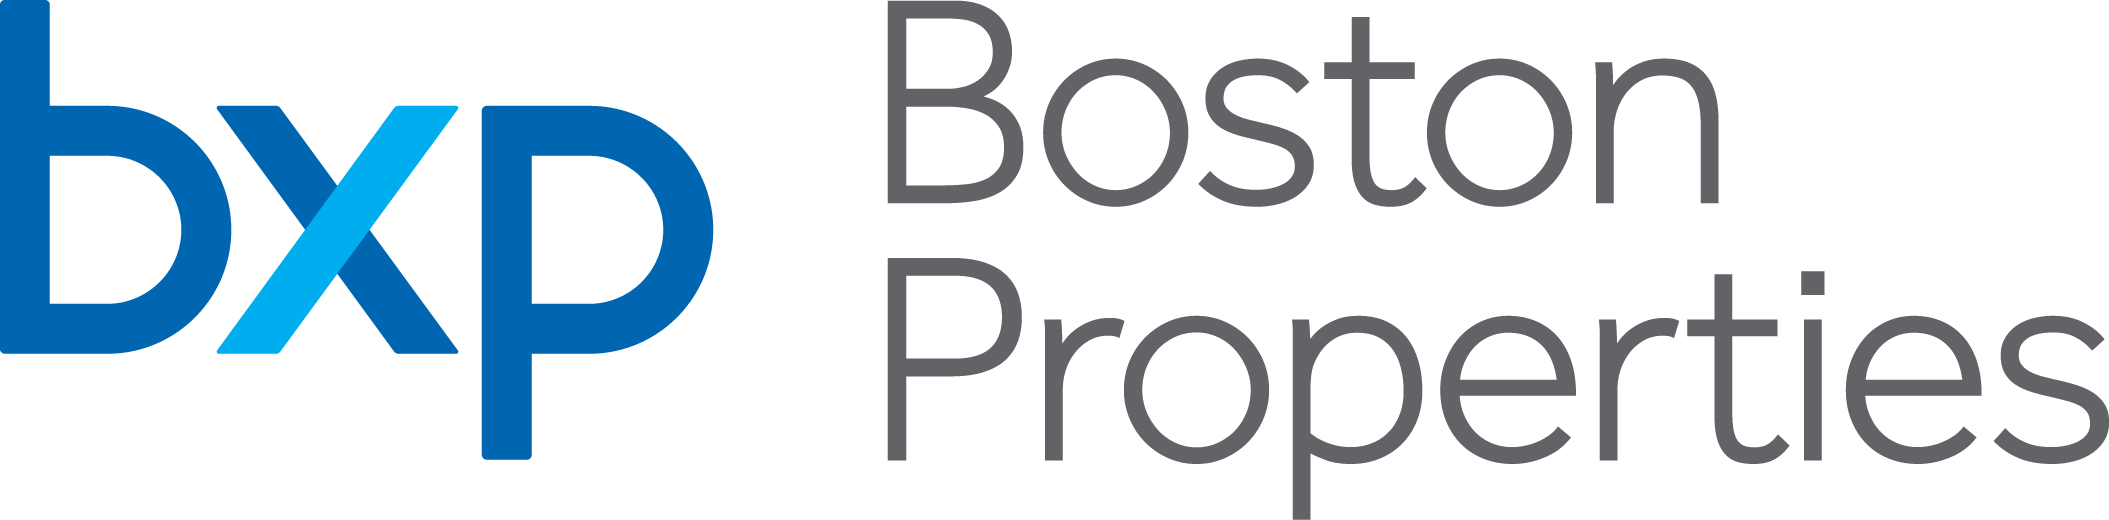 BXP Boston Properties logo